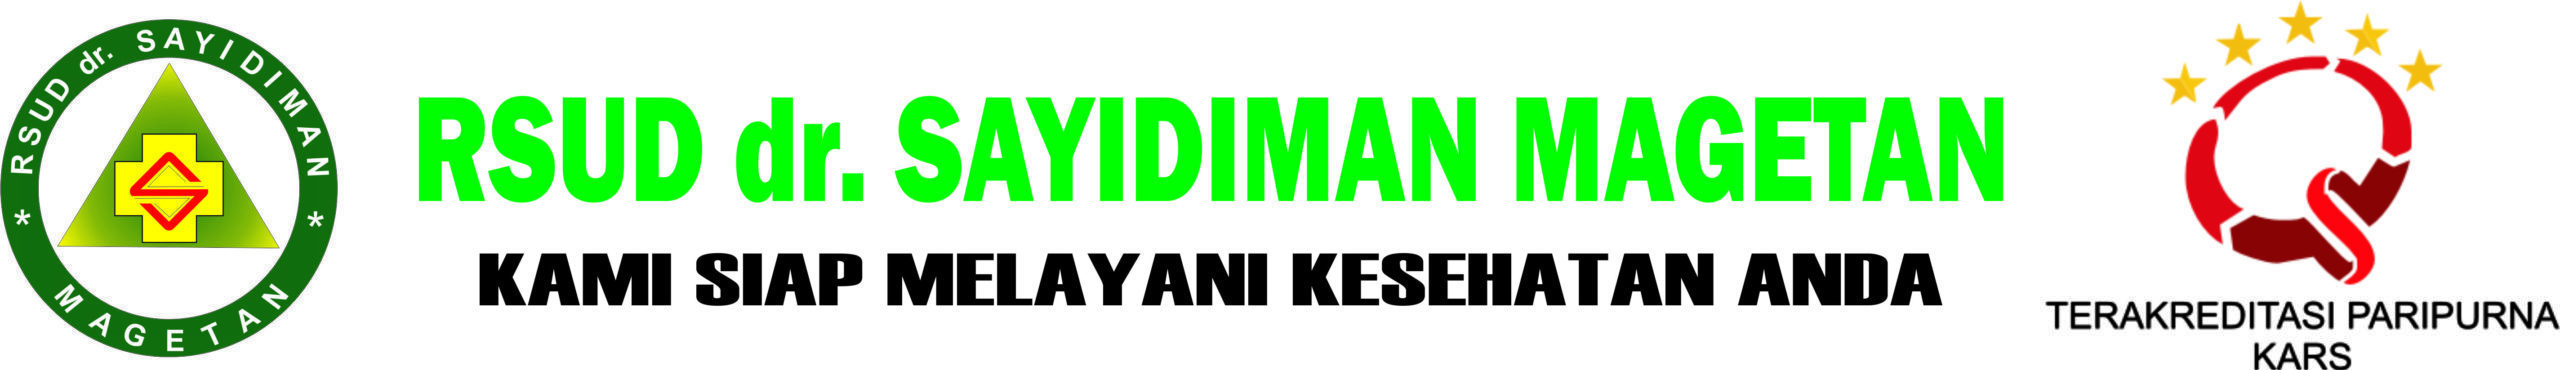 RSUD dr. Sayidiman Jl. Pahlawan No. 02 Magetan Jawa Timur 63318